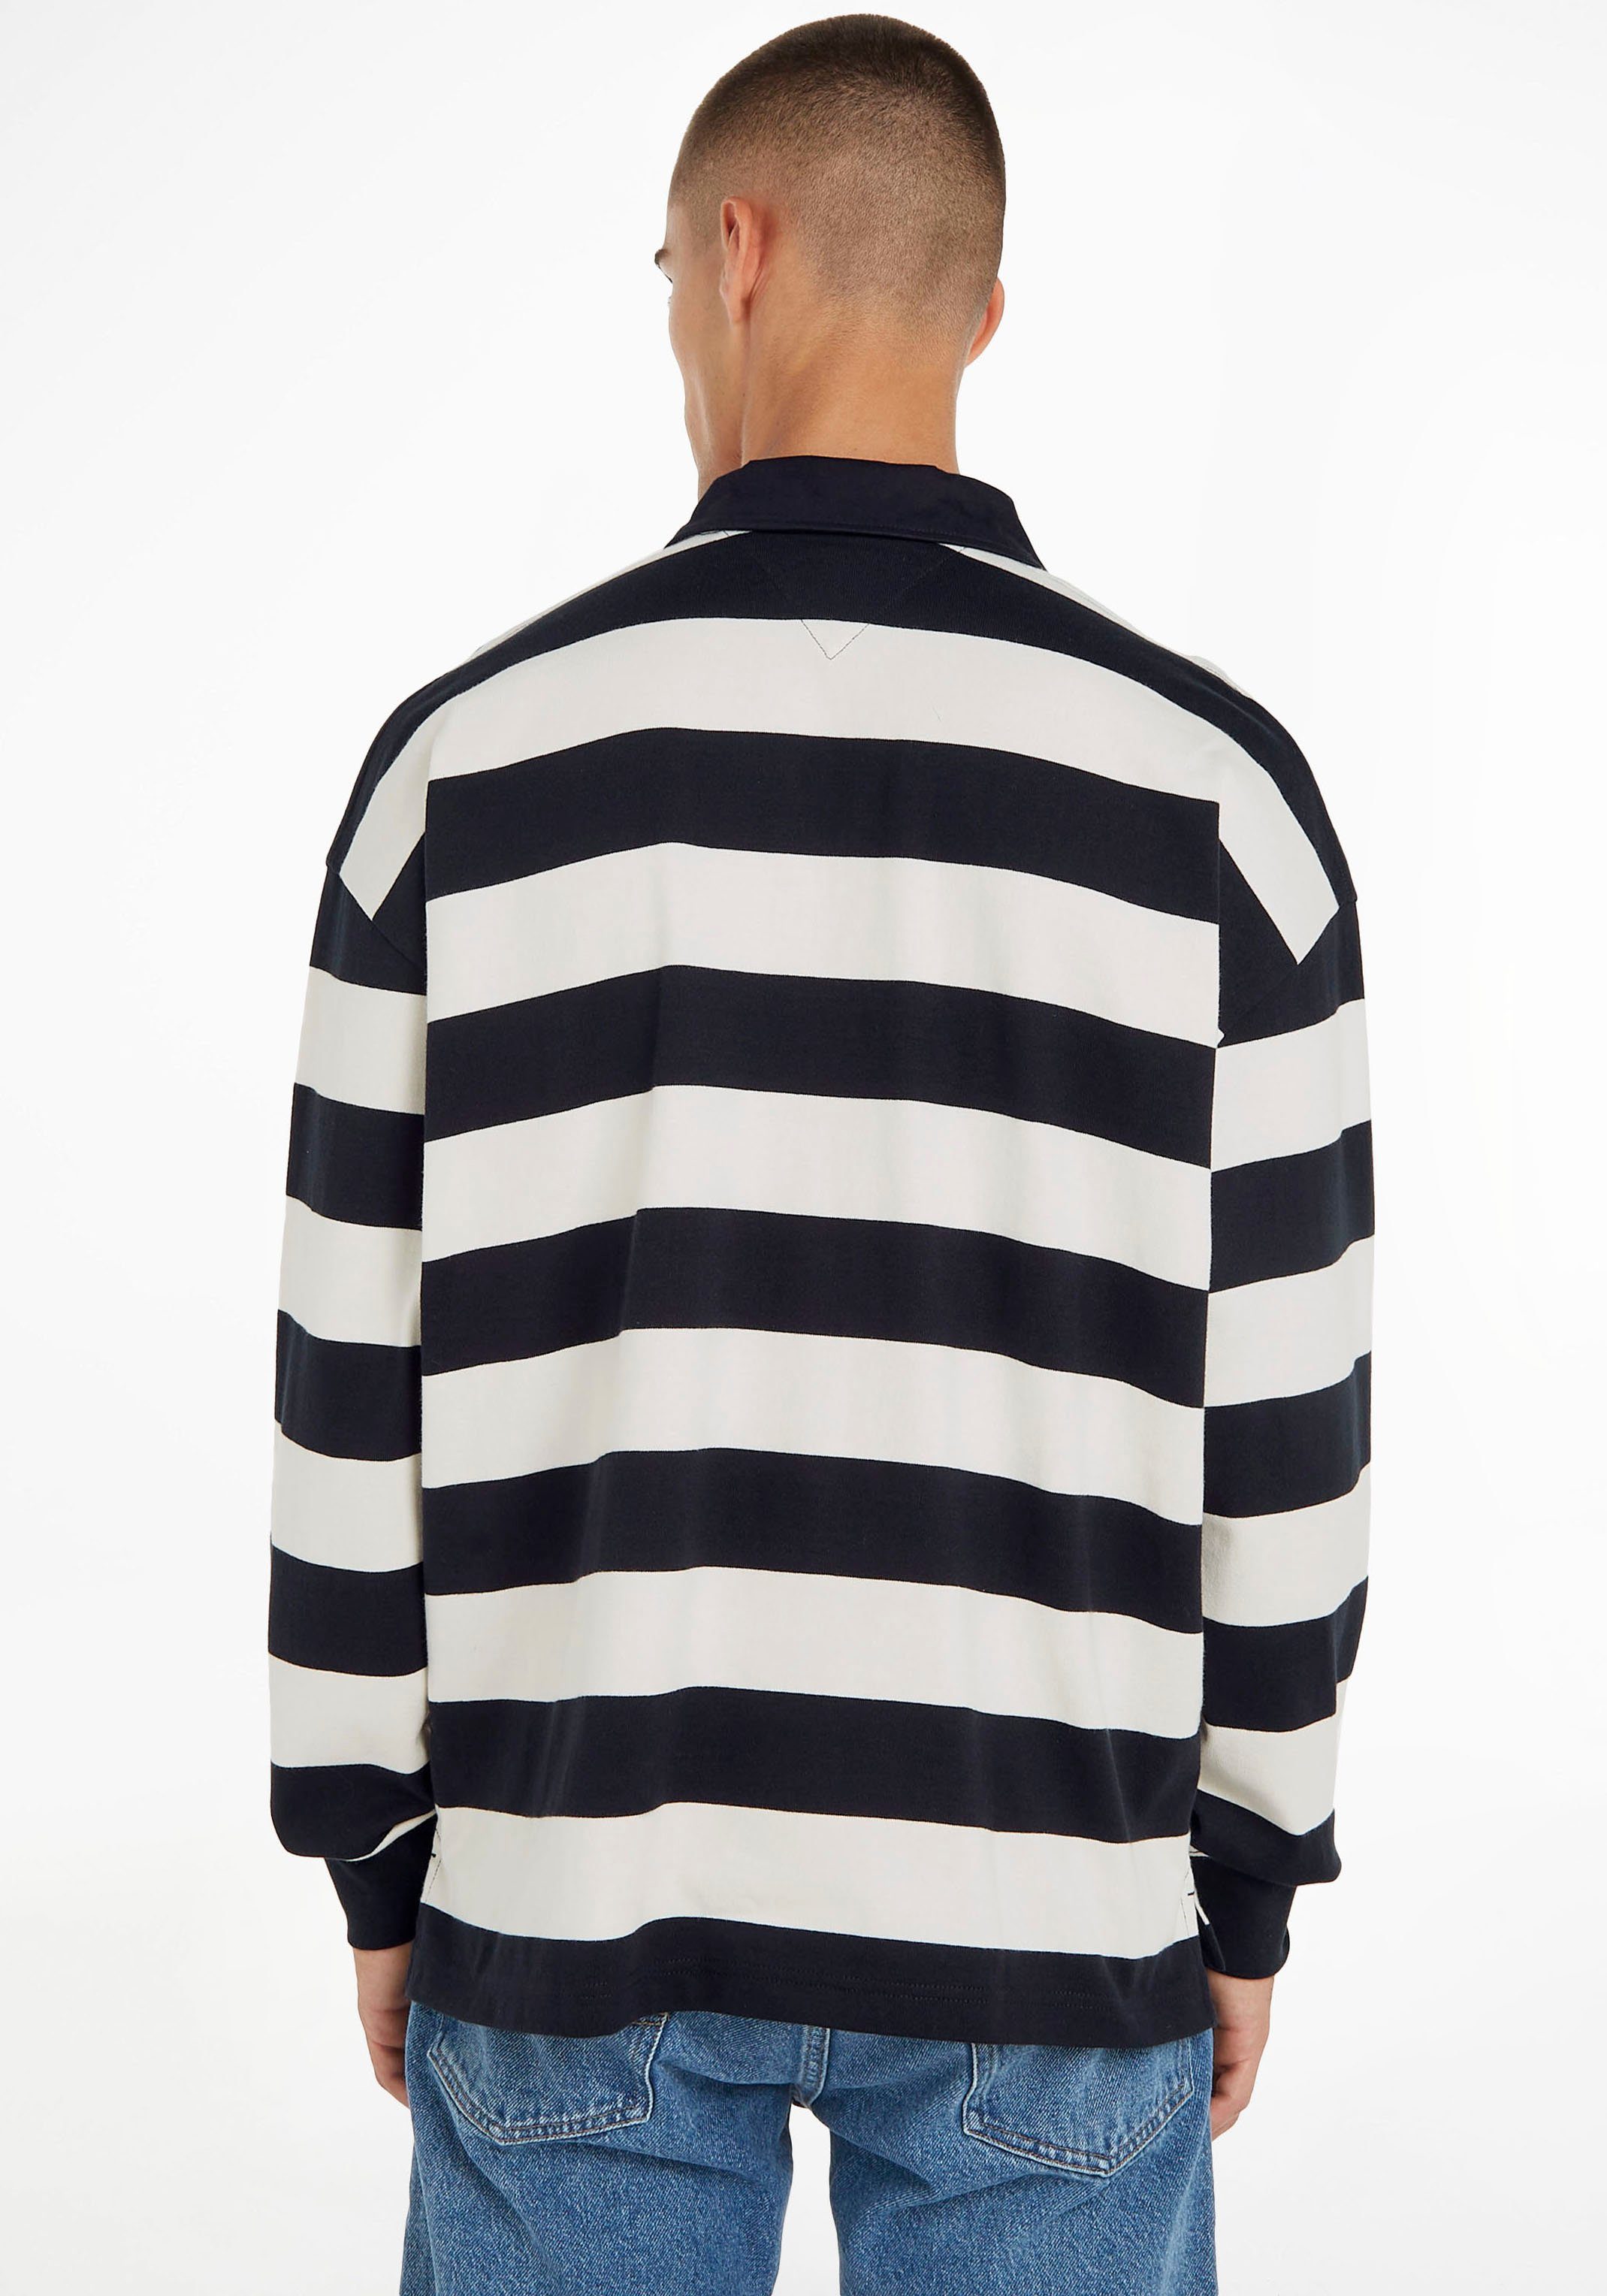 Streifendesign BLOCK Sweater Tommy STRIPED RUGBY Hilfiger im